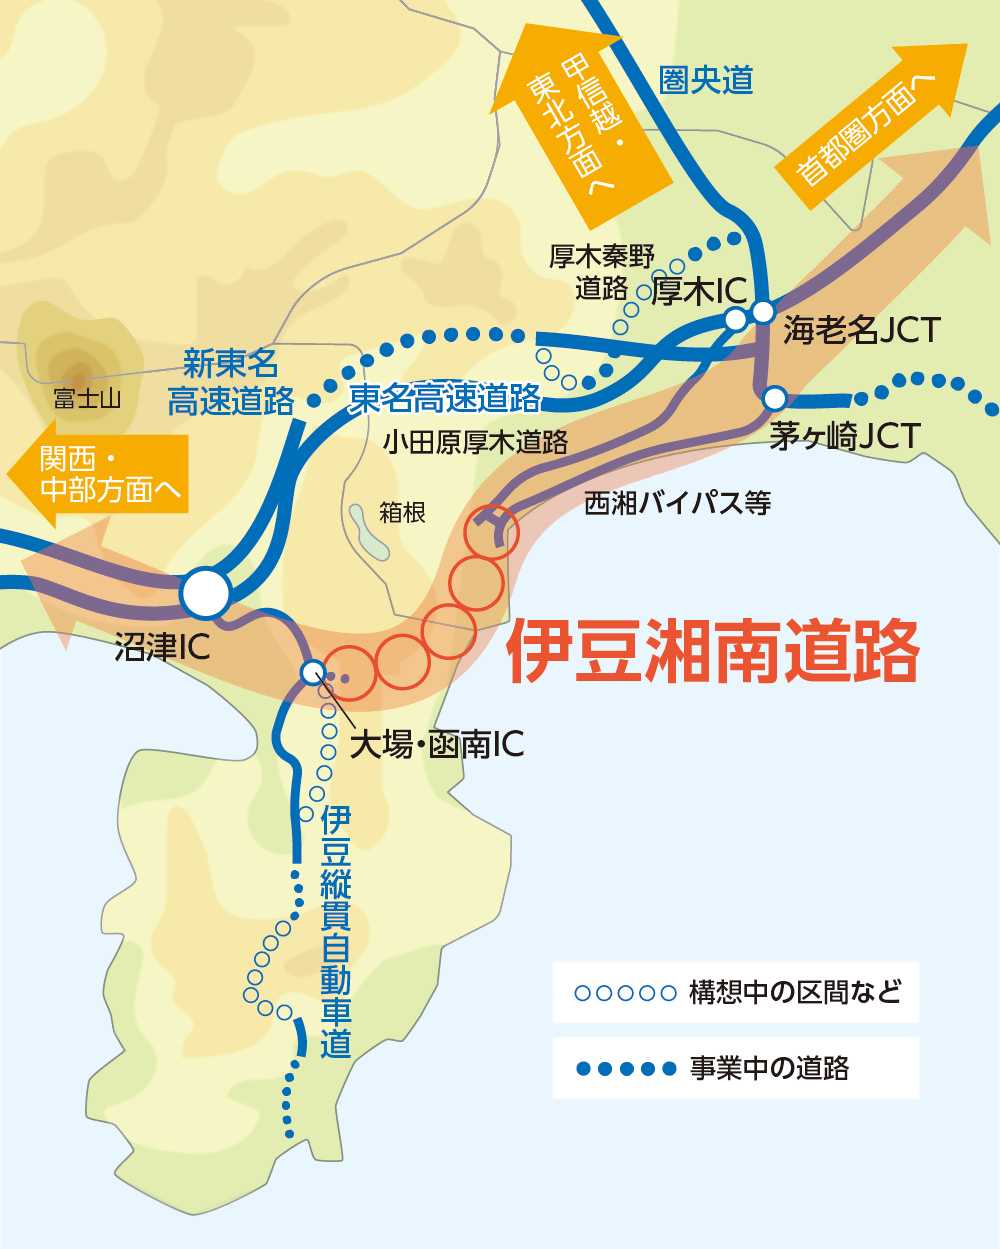 伊豆湘南道路の構想ルート図